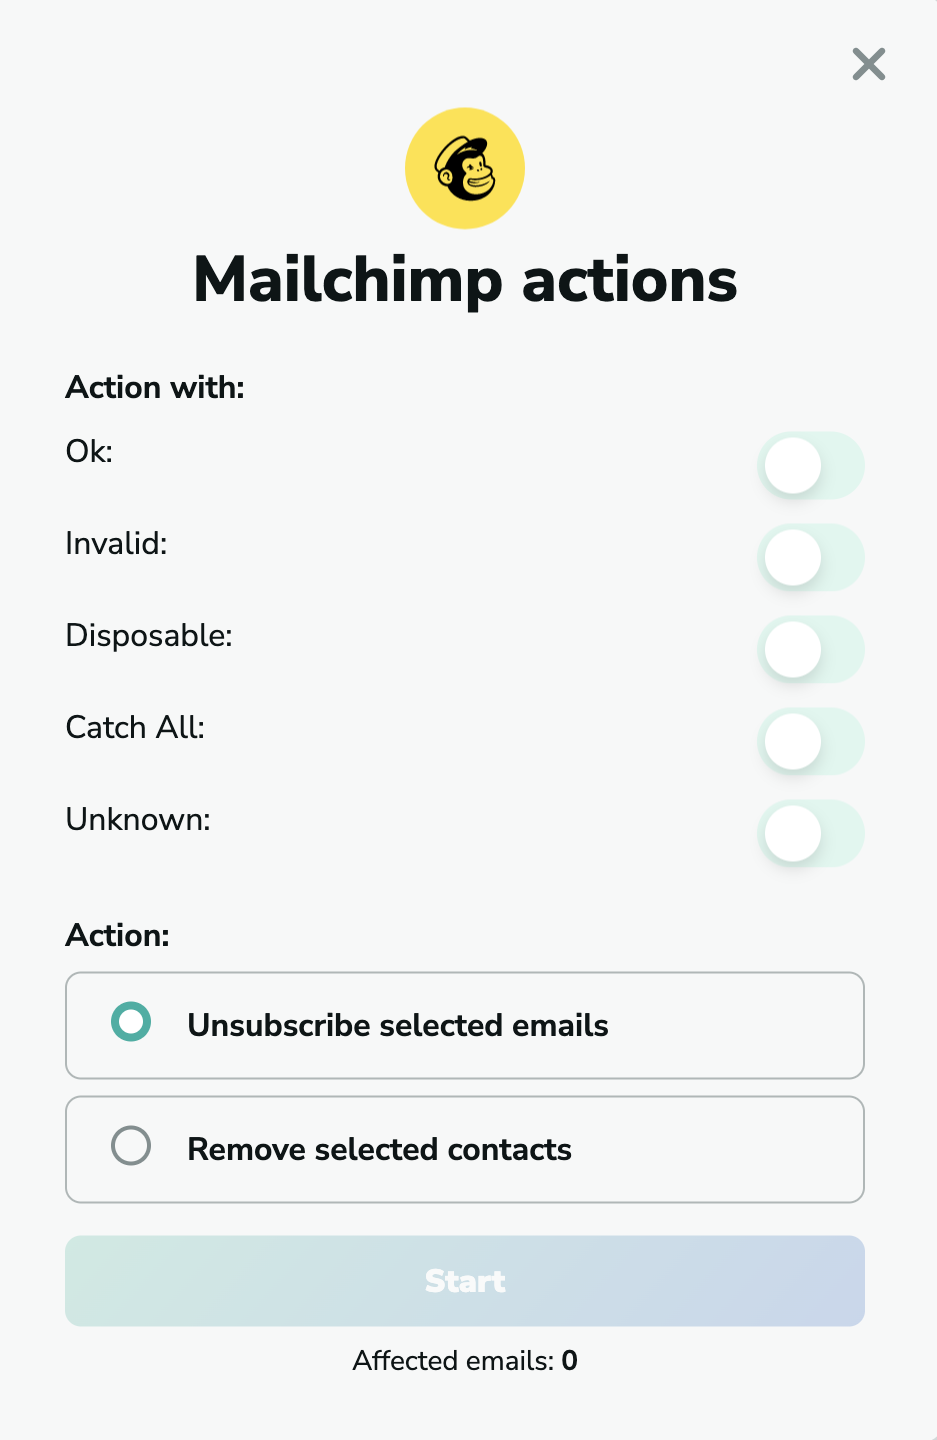 Mailchimp actions in MillionVerifier